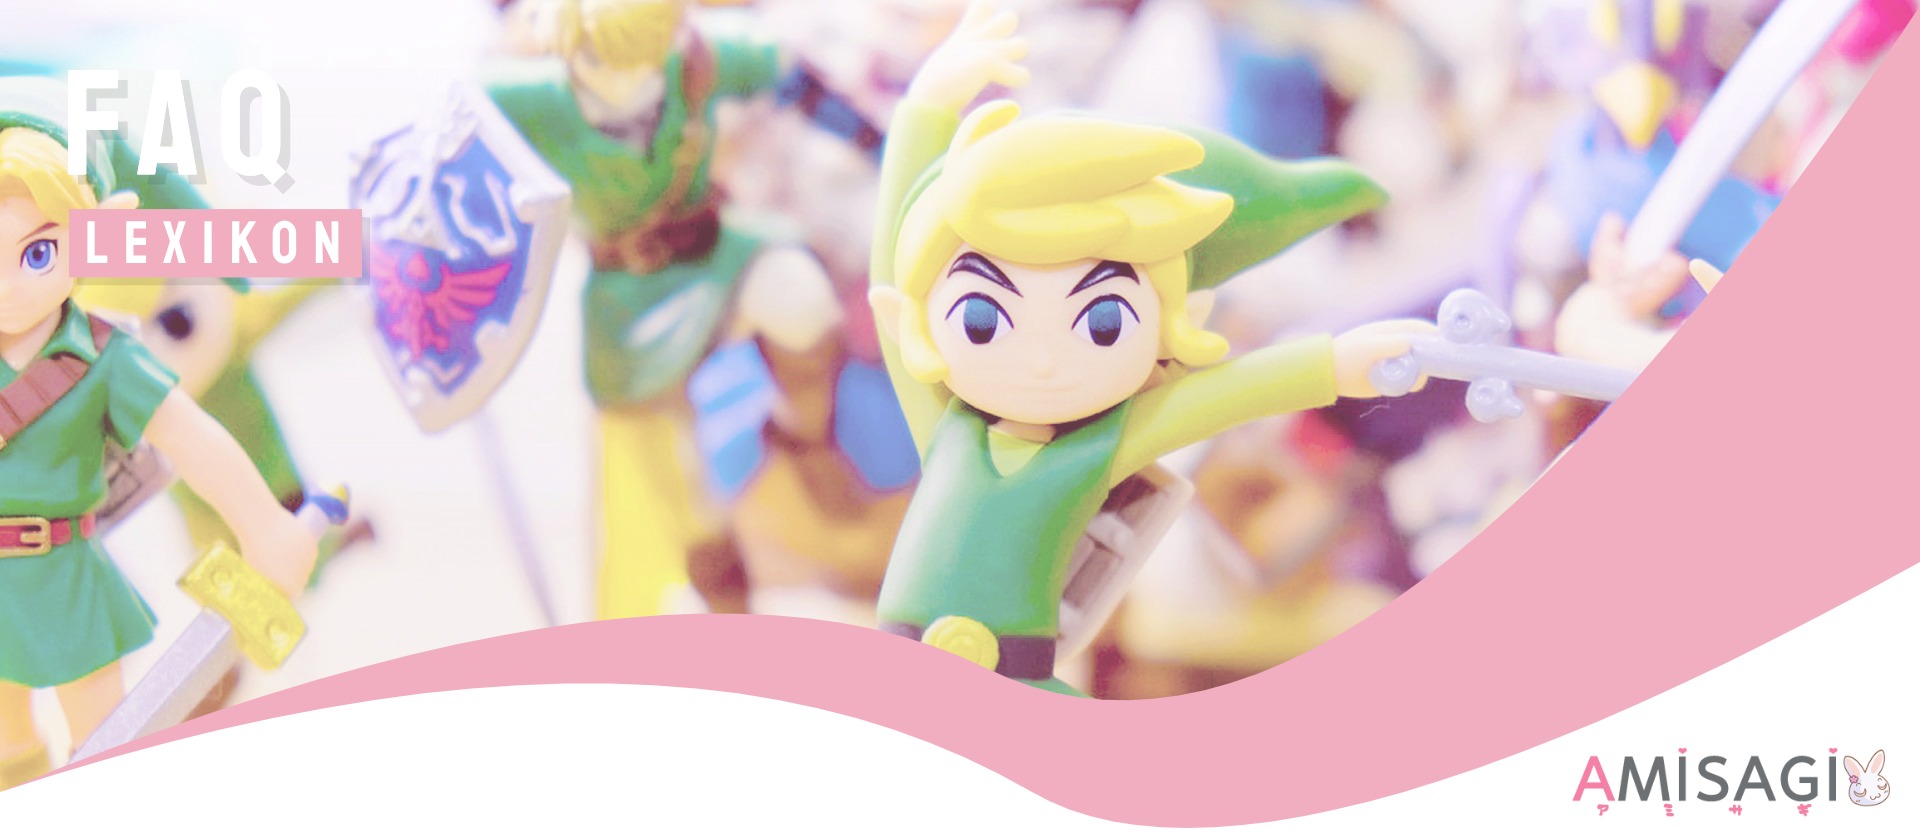 FAQ: Warum heißt es „The Legend of Zelda” (jap. ゼルダの伝説)?